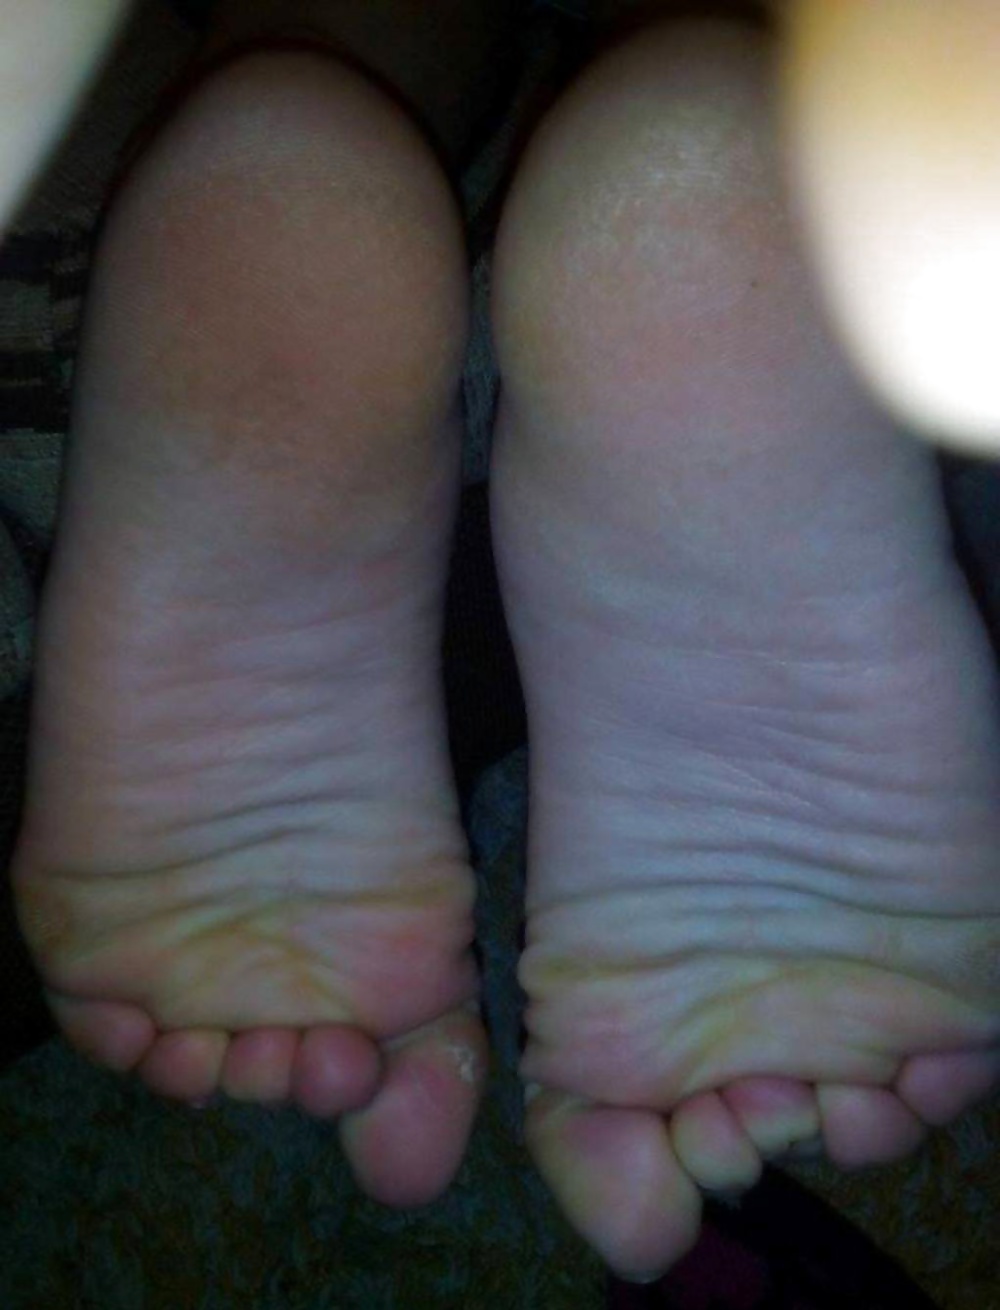 Free Female friend's feet photos